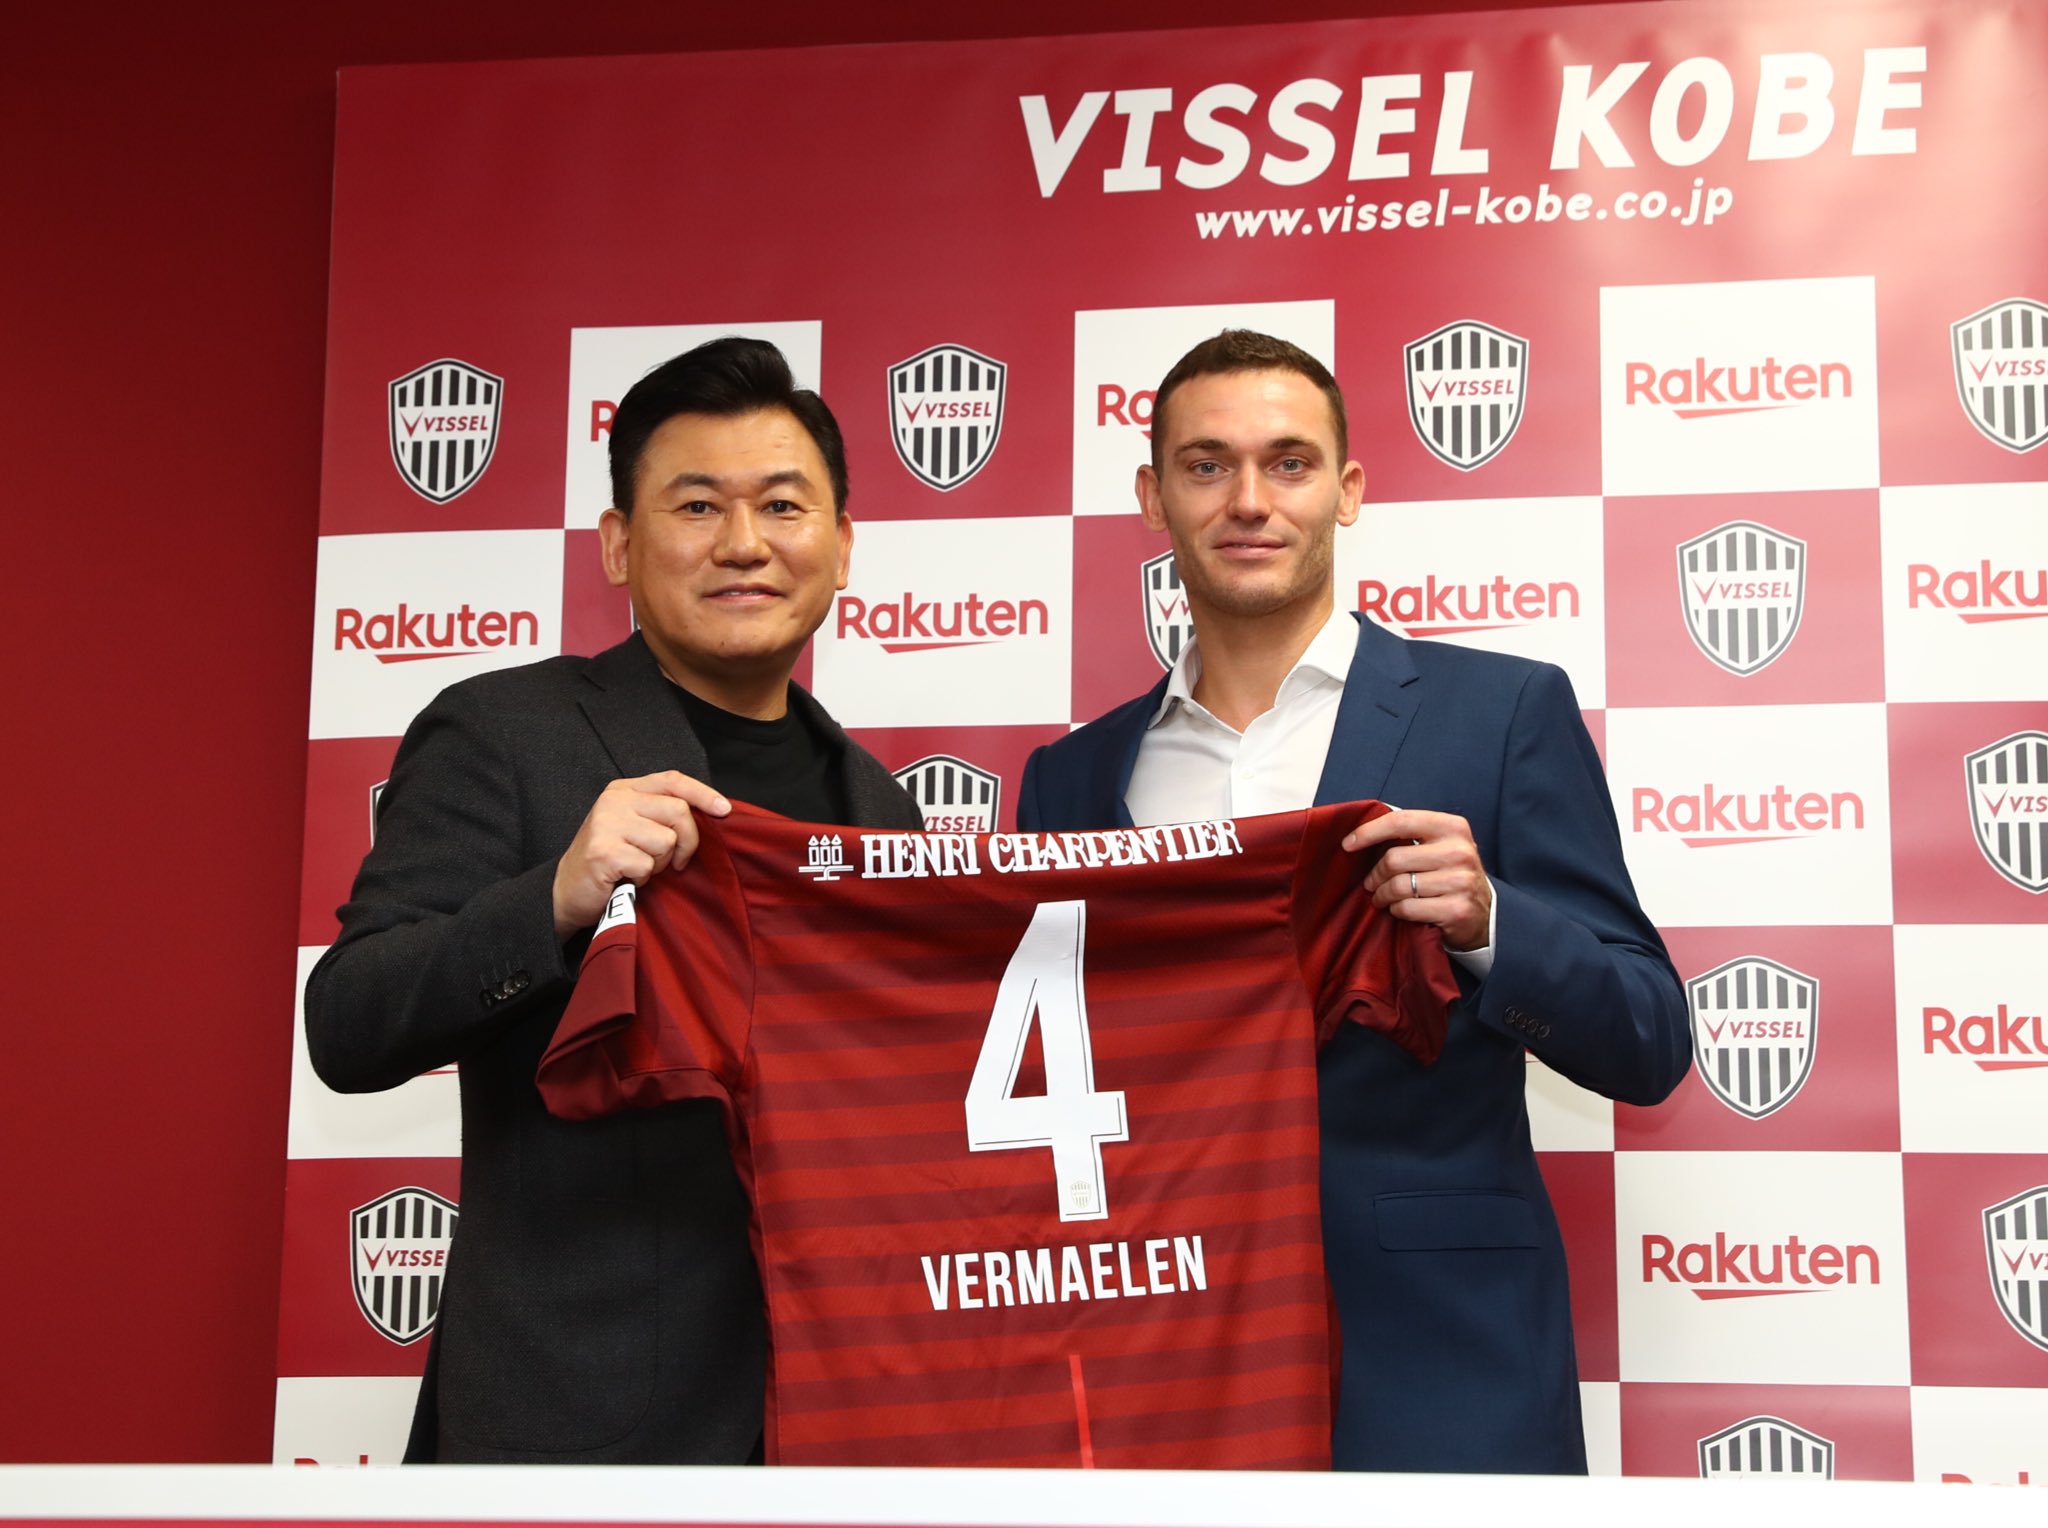 Vermaelen segueix el camí d'Iniesta i també jugarà al Vissel Kobe